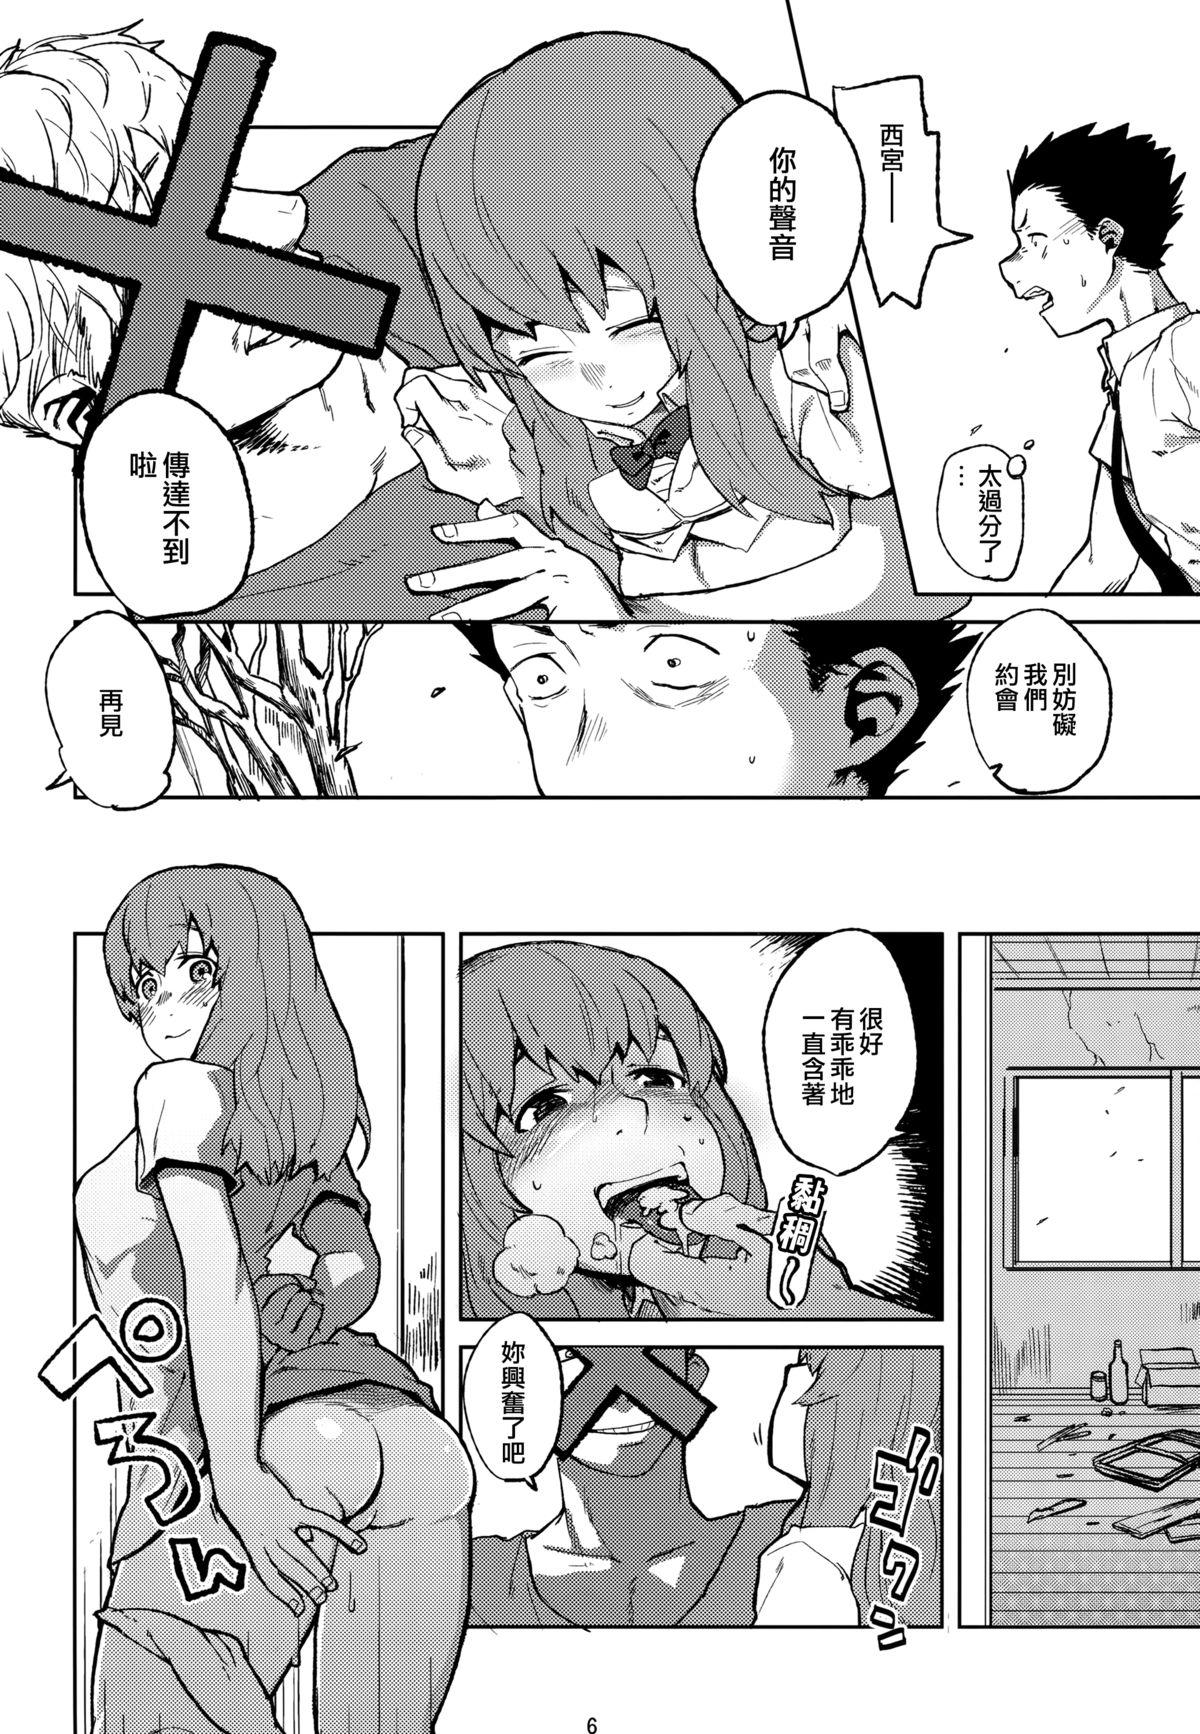 Hugecock Koe no Yukue - Koe no katachi Lesbians - Page 6